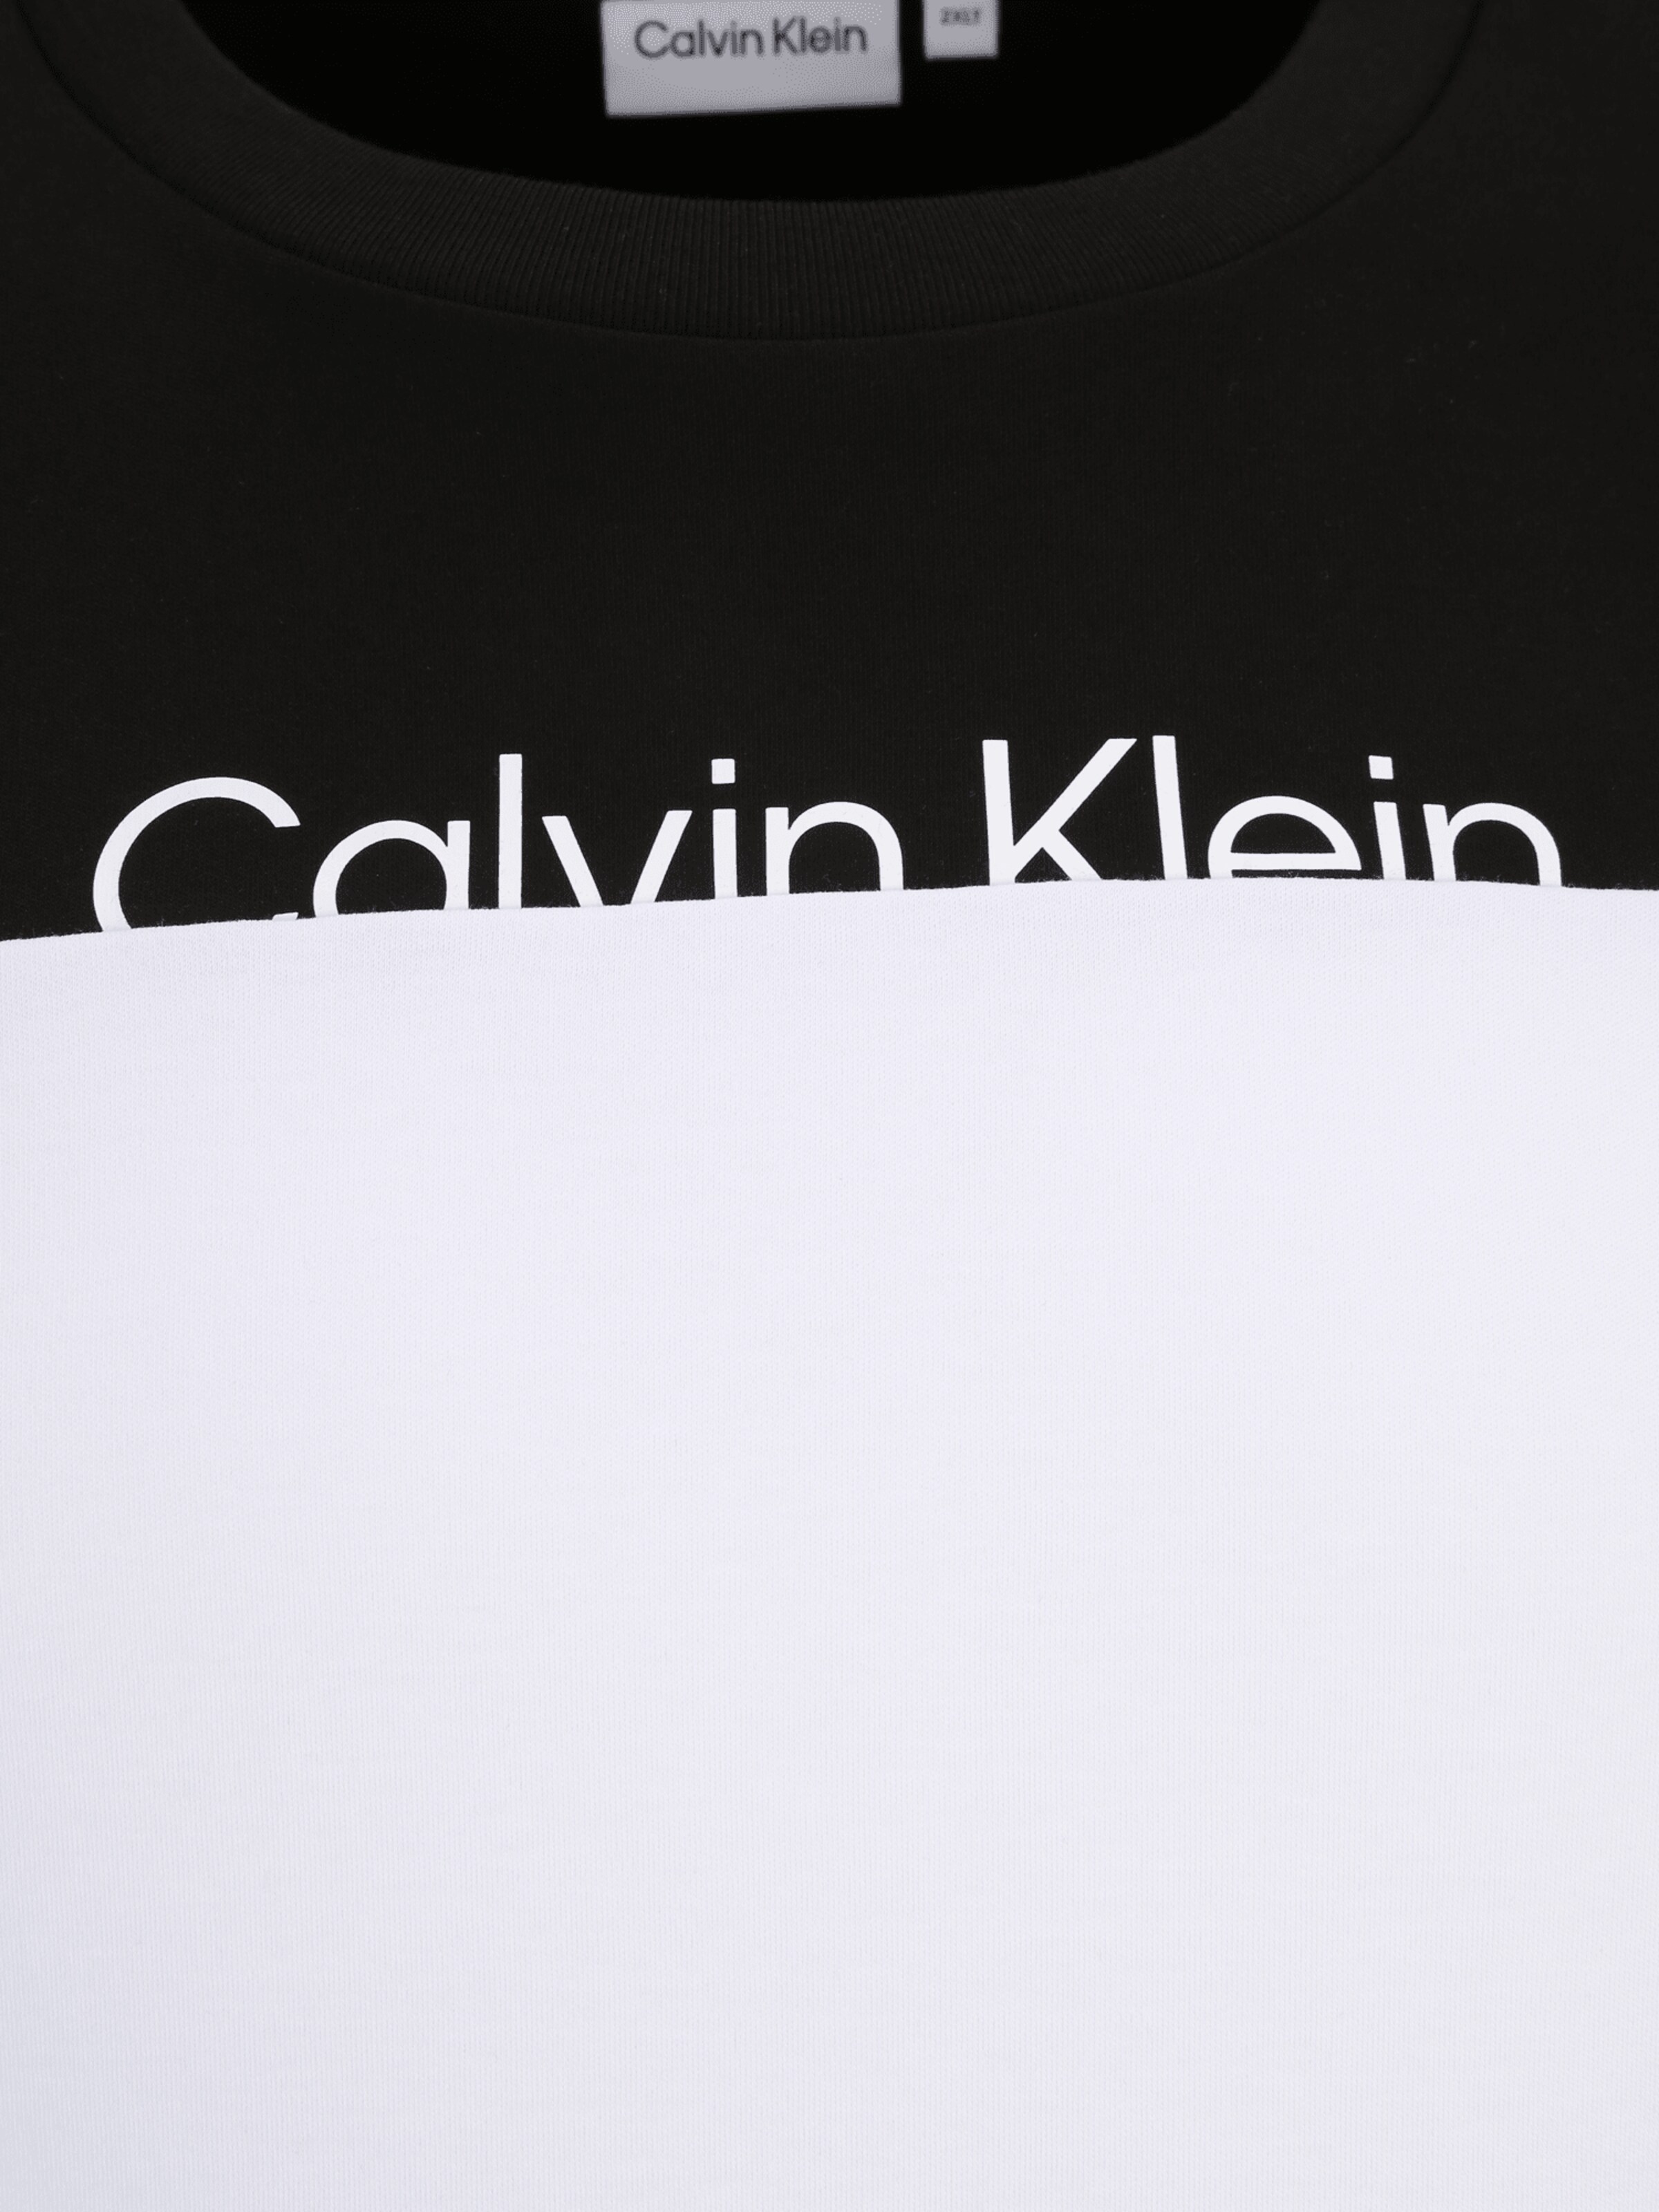 Männer Große Größen Calvin Klein Big & Tall T-Shirt in Schwarz, Weiß - FP65653